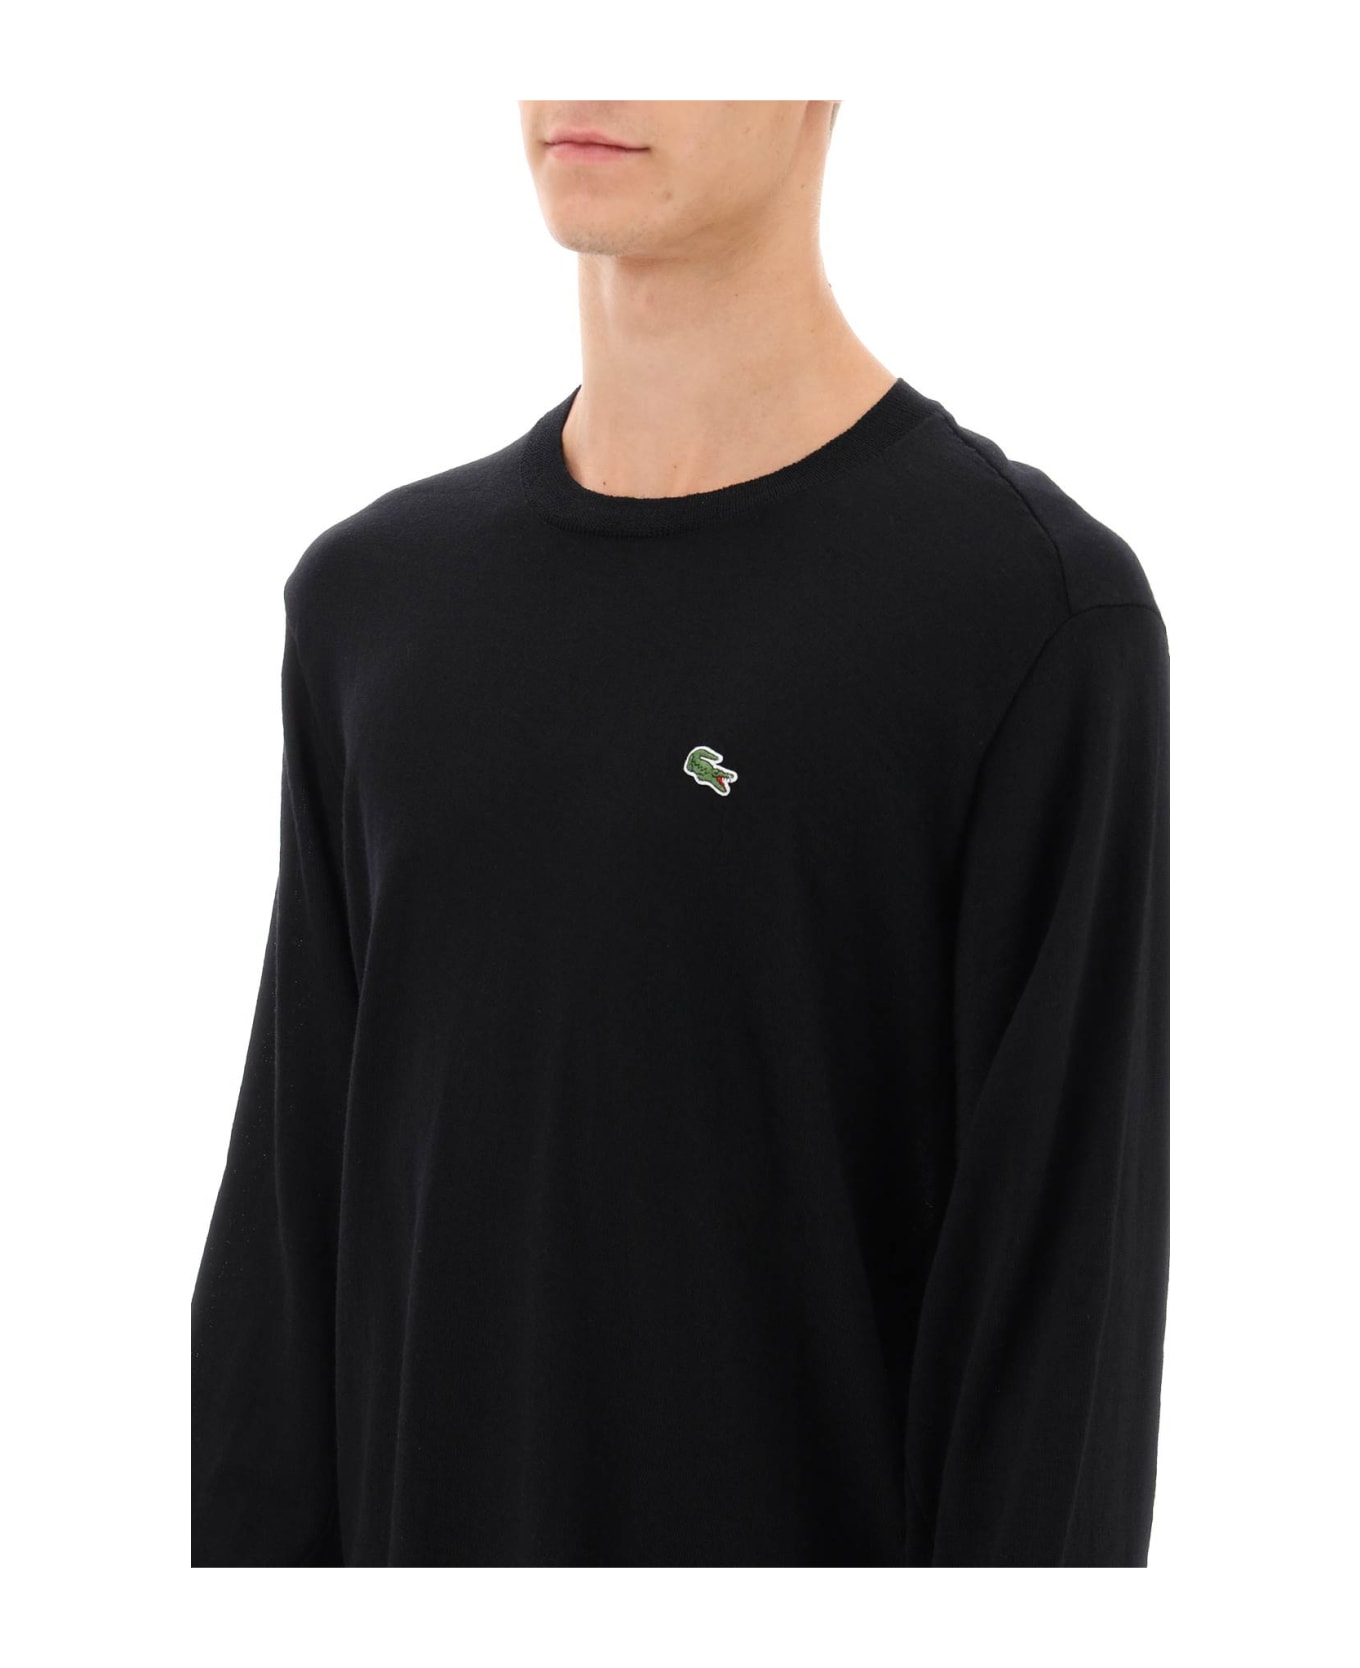 Comme des Garçons Shirt Boy X Lacoste Bias-cut Sweater - Black ニットウェア